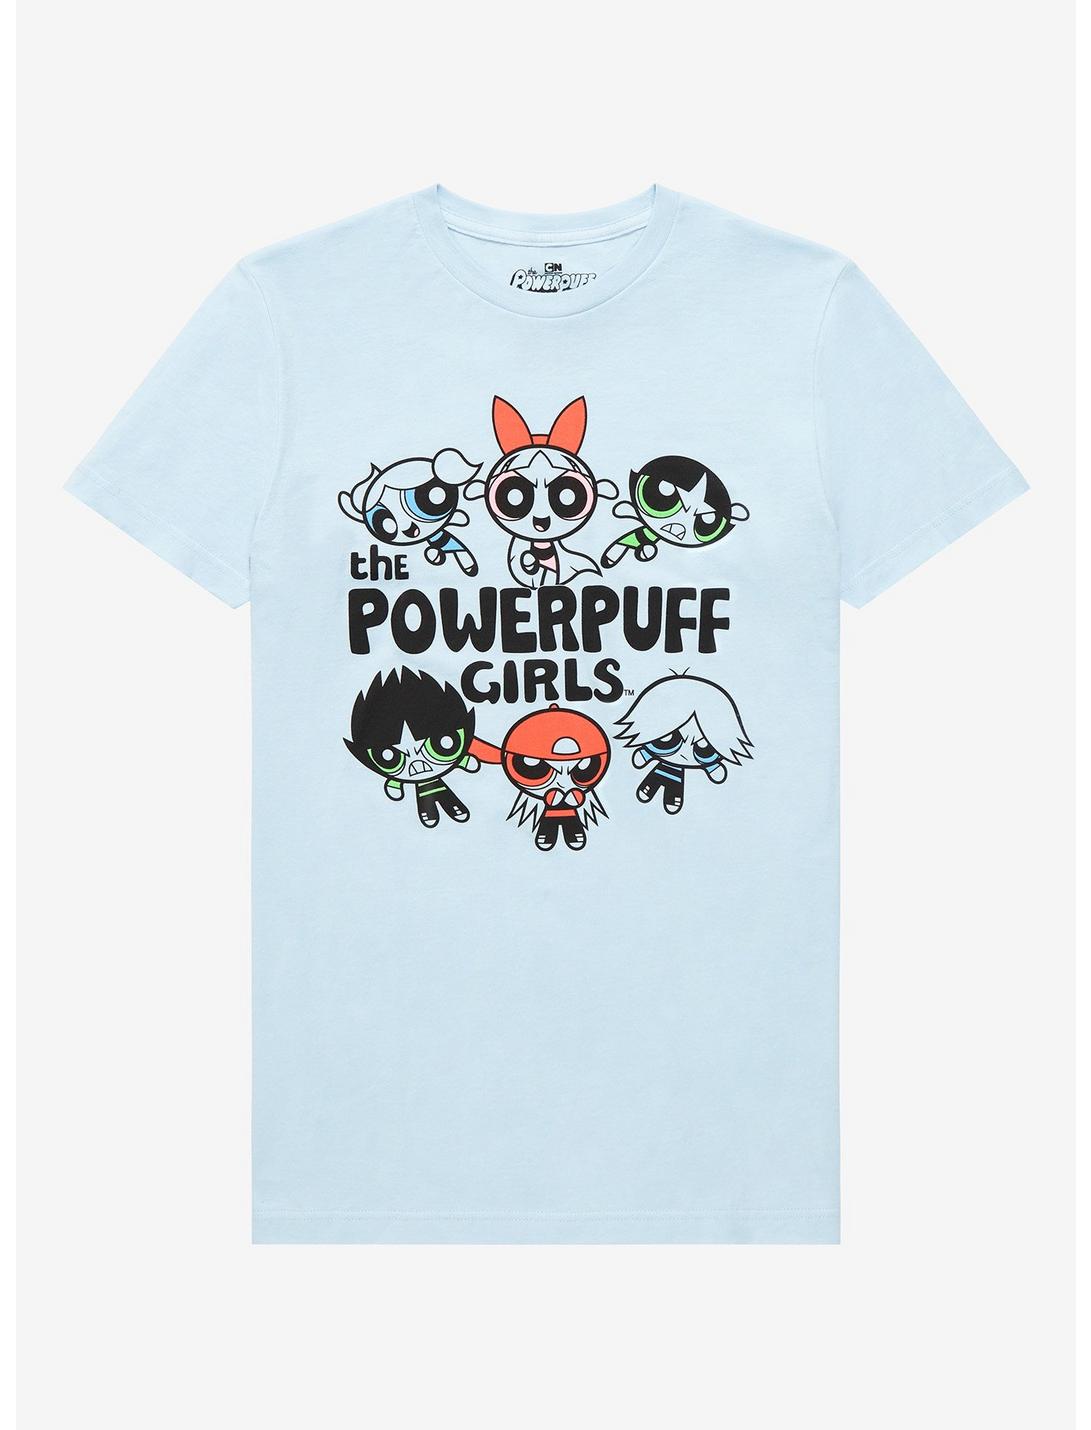 Powerpuff Girls Rowdyruff Boys & Powerpuff Girls T-Shirt - BoxLunch Exclusive, LIGHT BLUE, hi-res